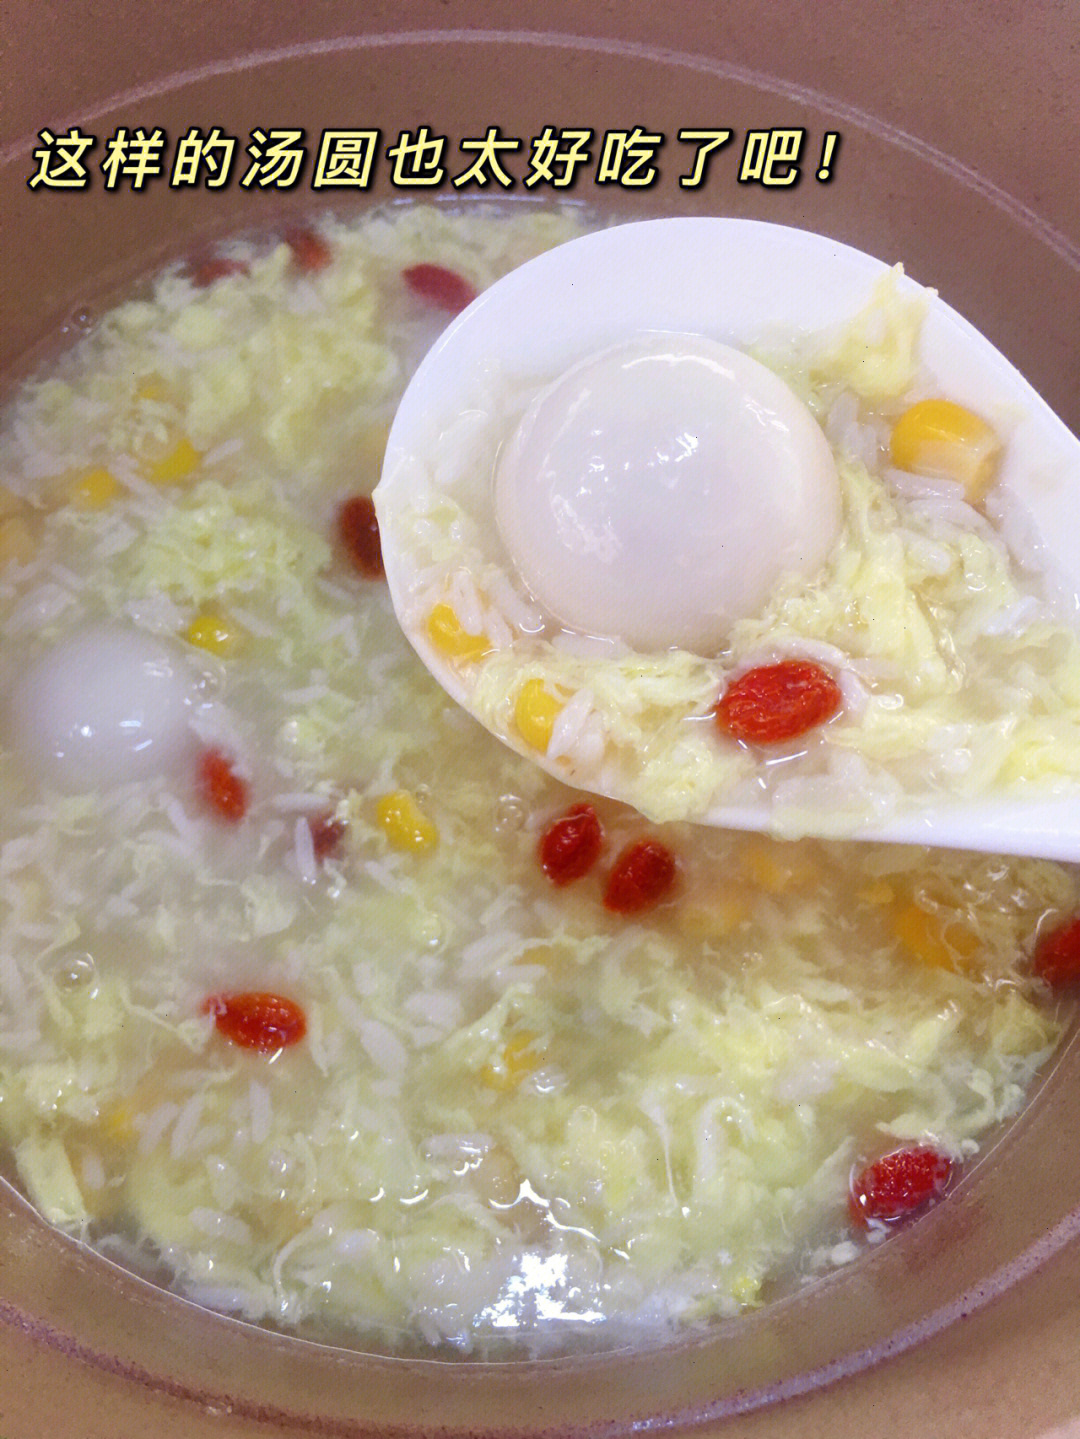 95食材:汤圆,米酒,玉米粒,鸡蛋,枸杞95做法:汤圆煮熟,倒入米酒